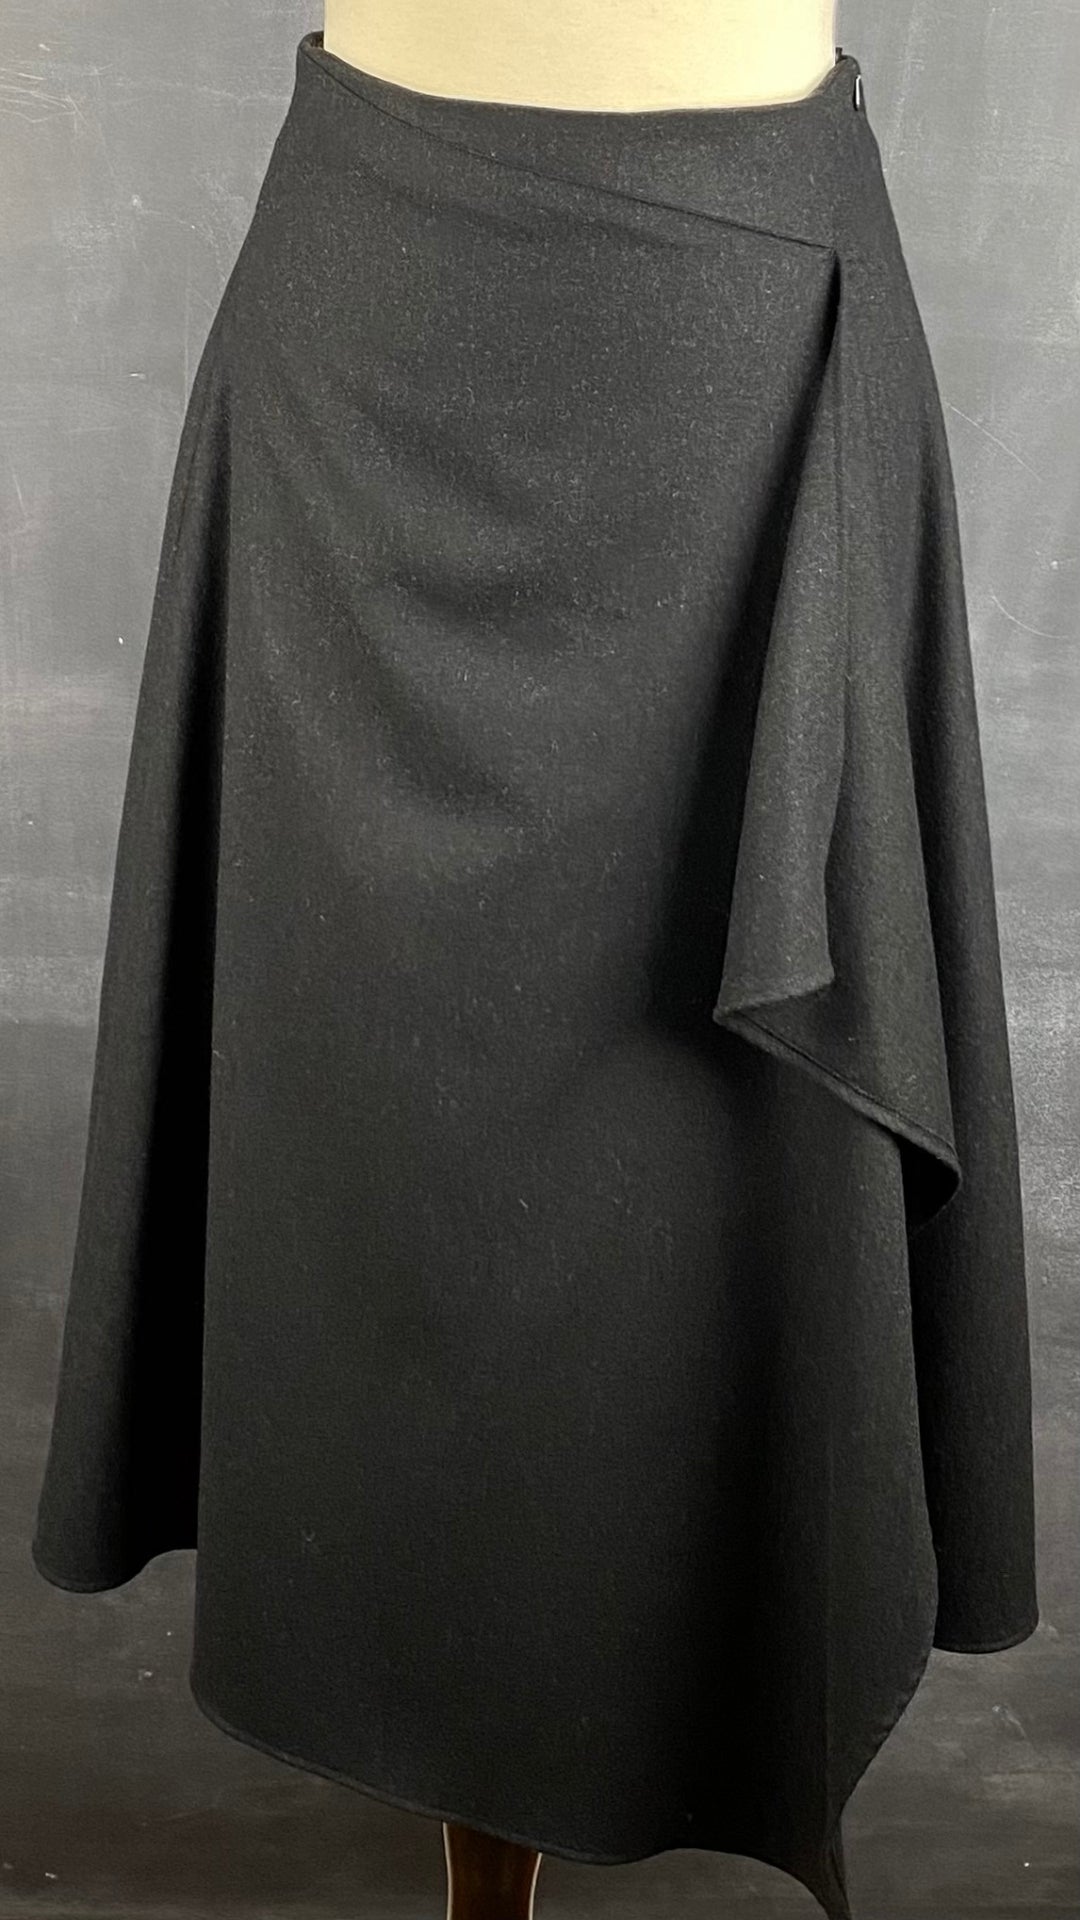 Jupe longue noire chiné en lainage Massimo Dutti, taille small. Vue de face.